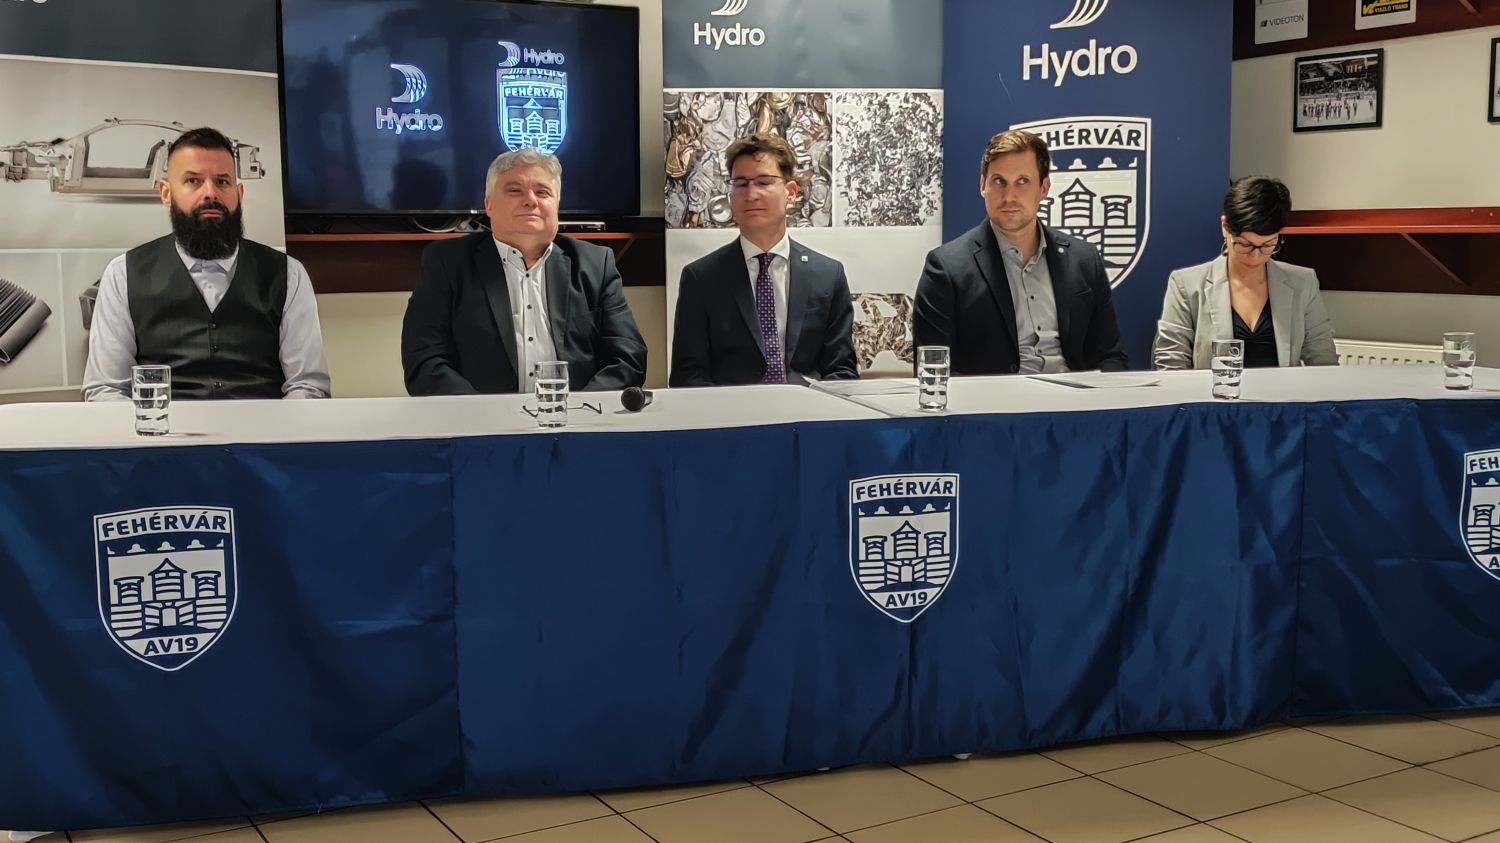 Jégkorong - A Hydro újabb három évig támogatja a Fehérvár AV19 csapatát